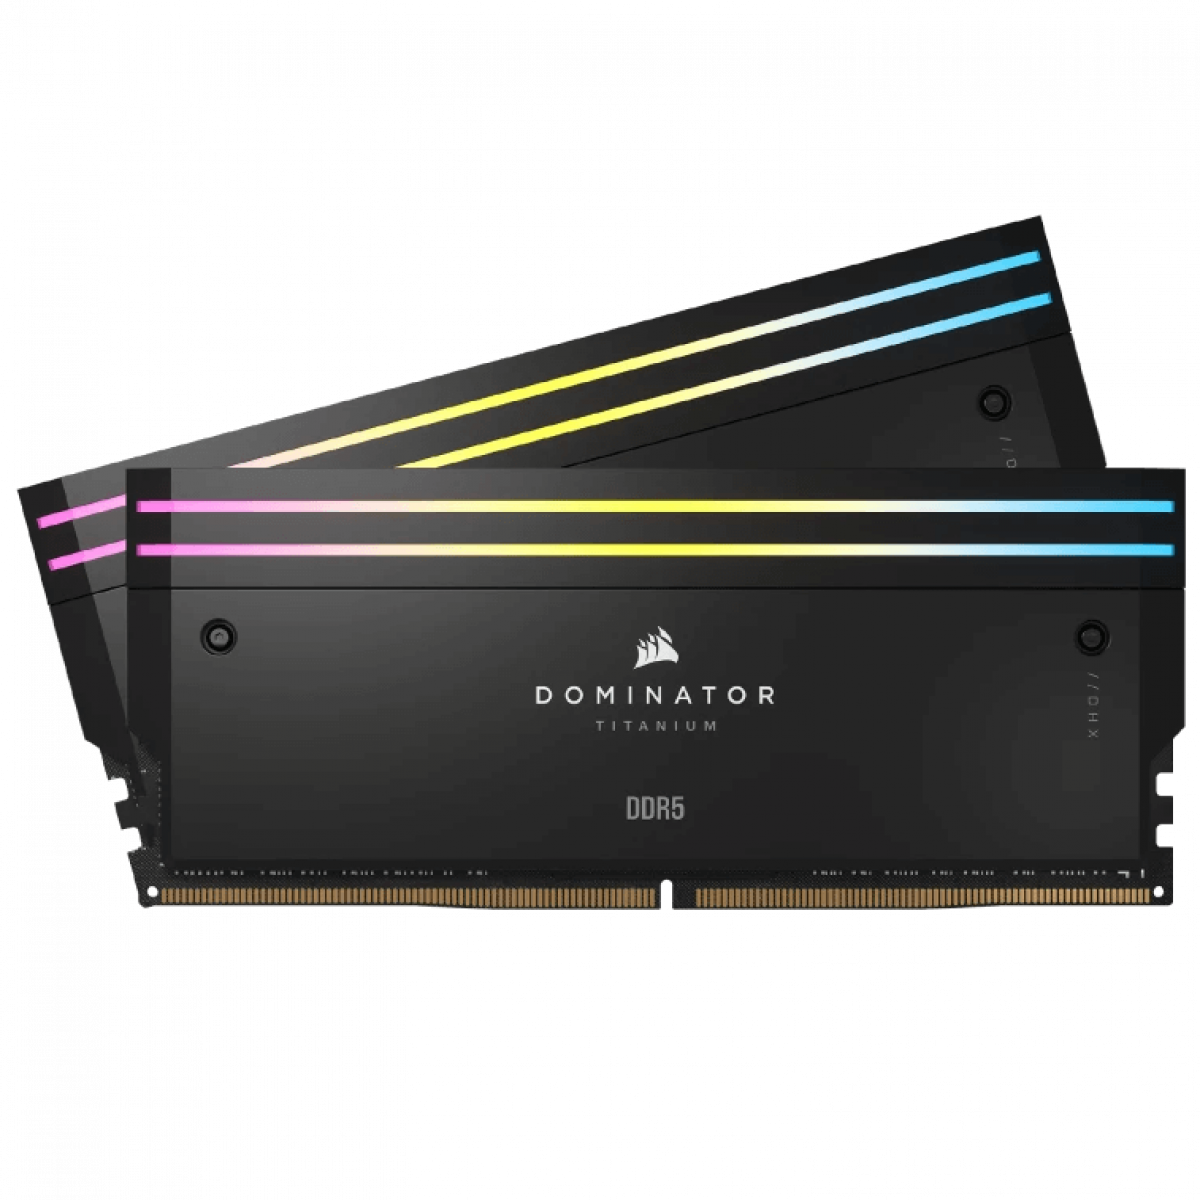 CORSAIR DOMINATOR TITANIUM Black DDR5, 6600MT/s 32GB 2x16GB DIMM, XMP 3.0, RGB LED, 1.4V